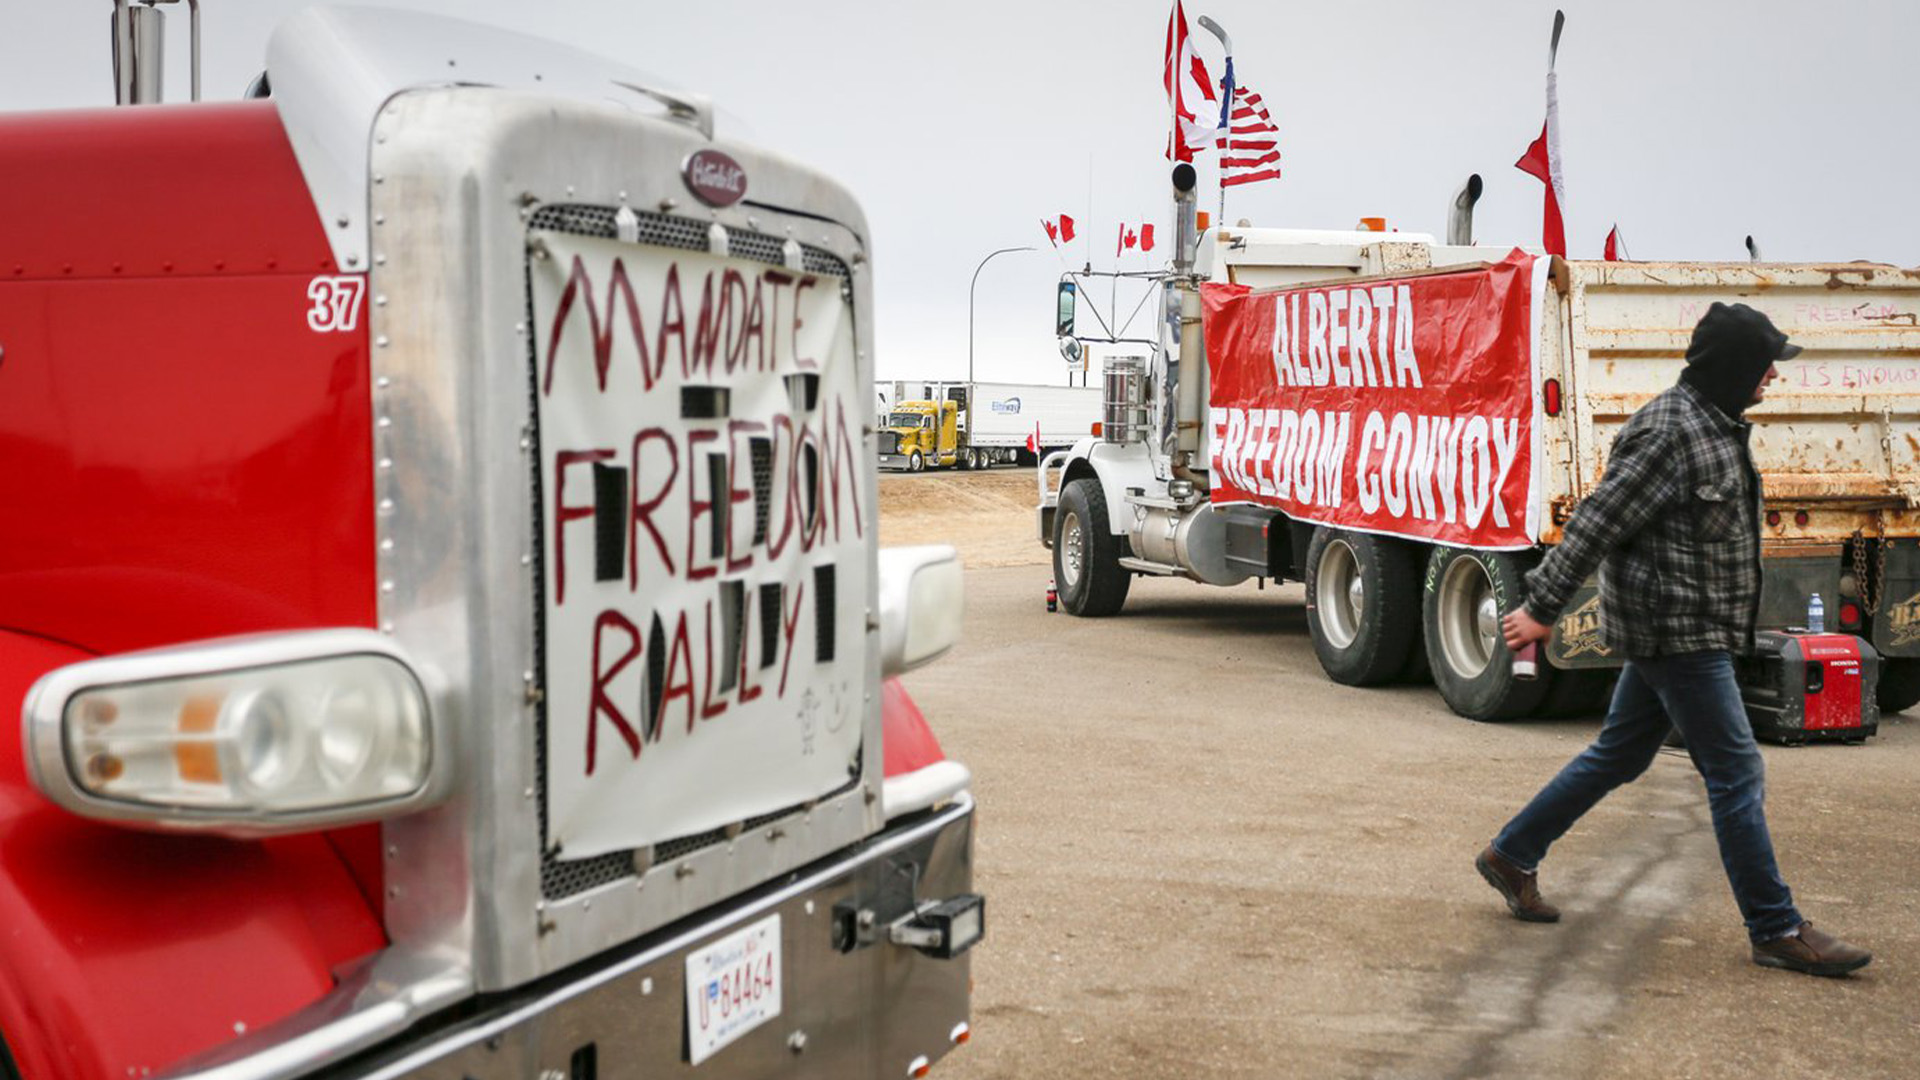 Des manifestants anti-mandat se rassemblent alors qu'un convoi de camions bloque l'autoroute du passage frontalier américain très fréquenté à Coutts, en Alberta, le lundi 31 janvier 2022.